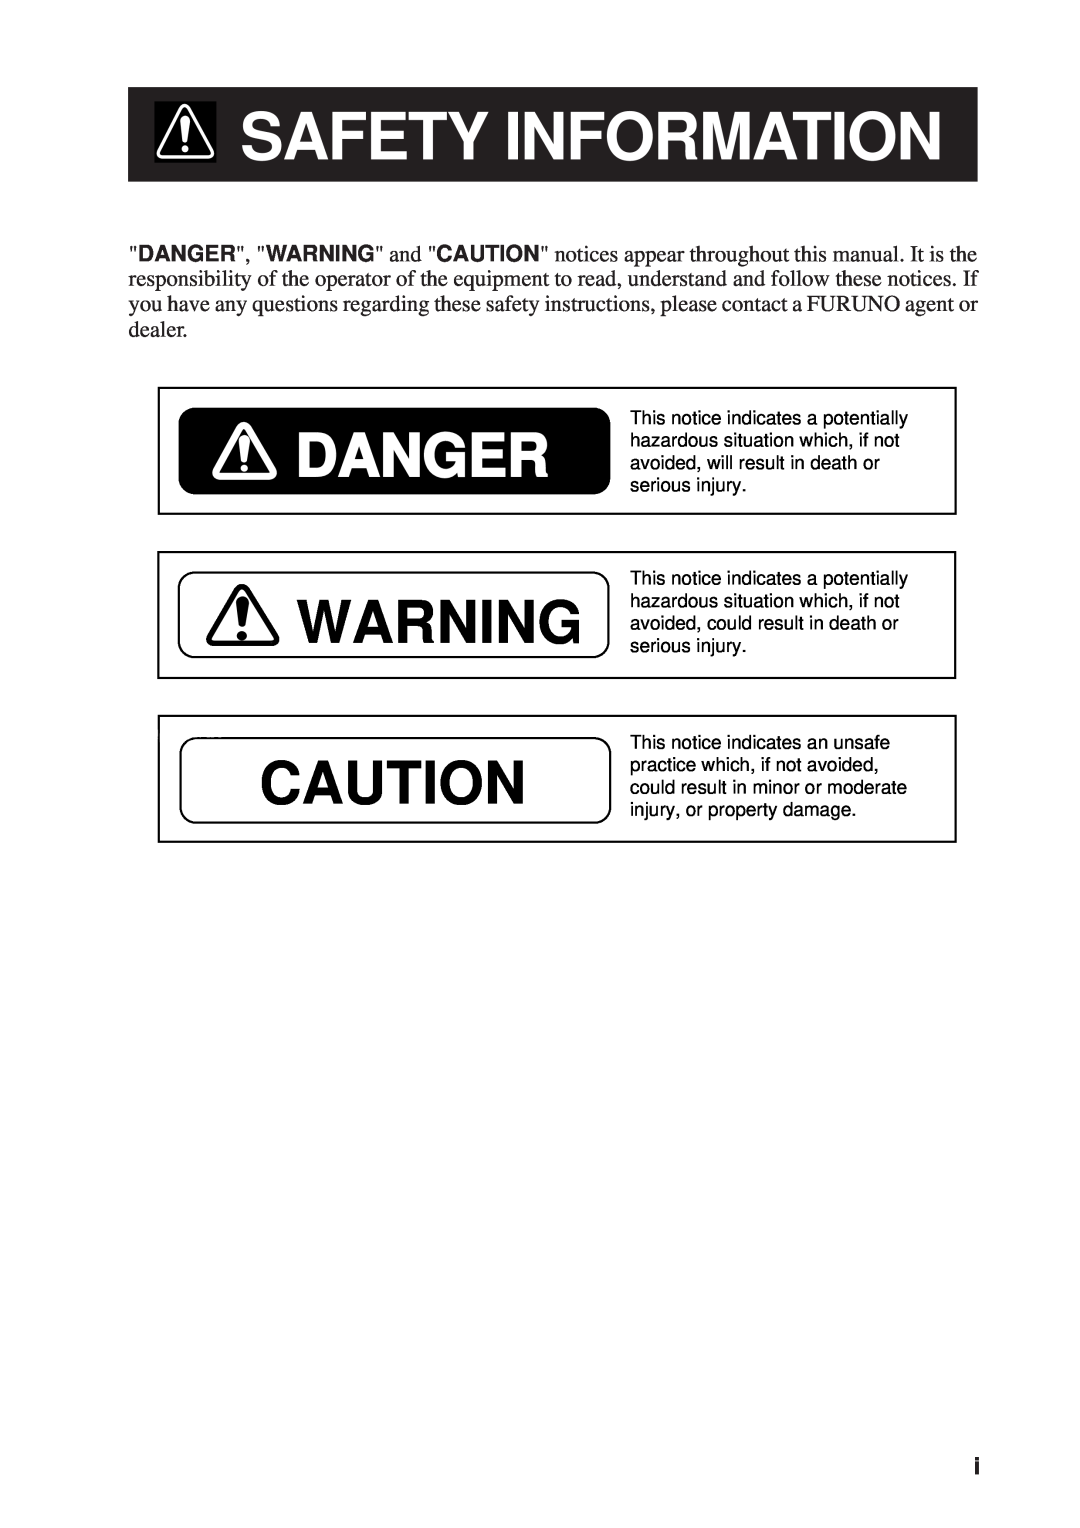 Furuno FR-8111, FR-8251 manual Safety Information, Danger 